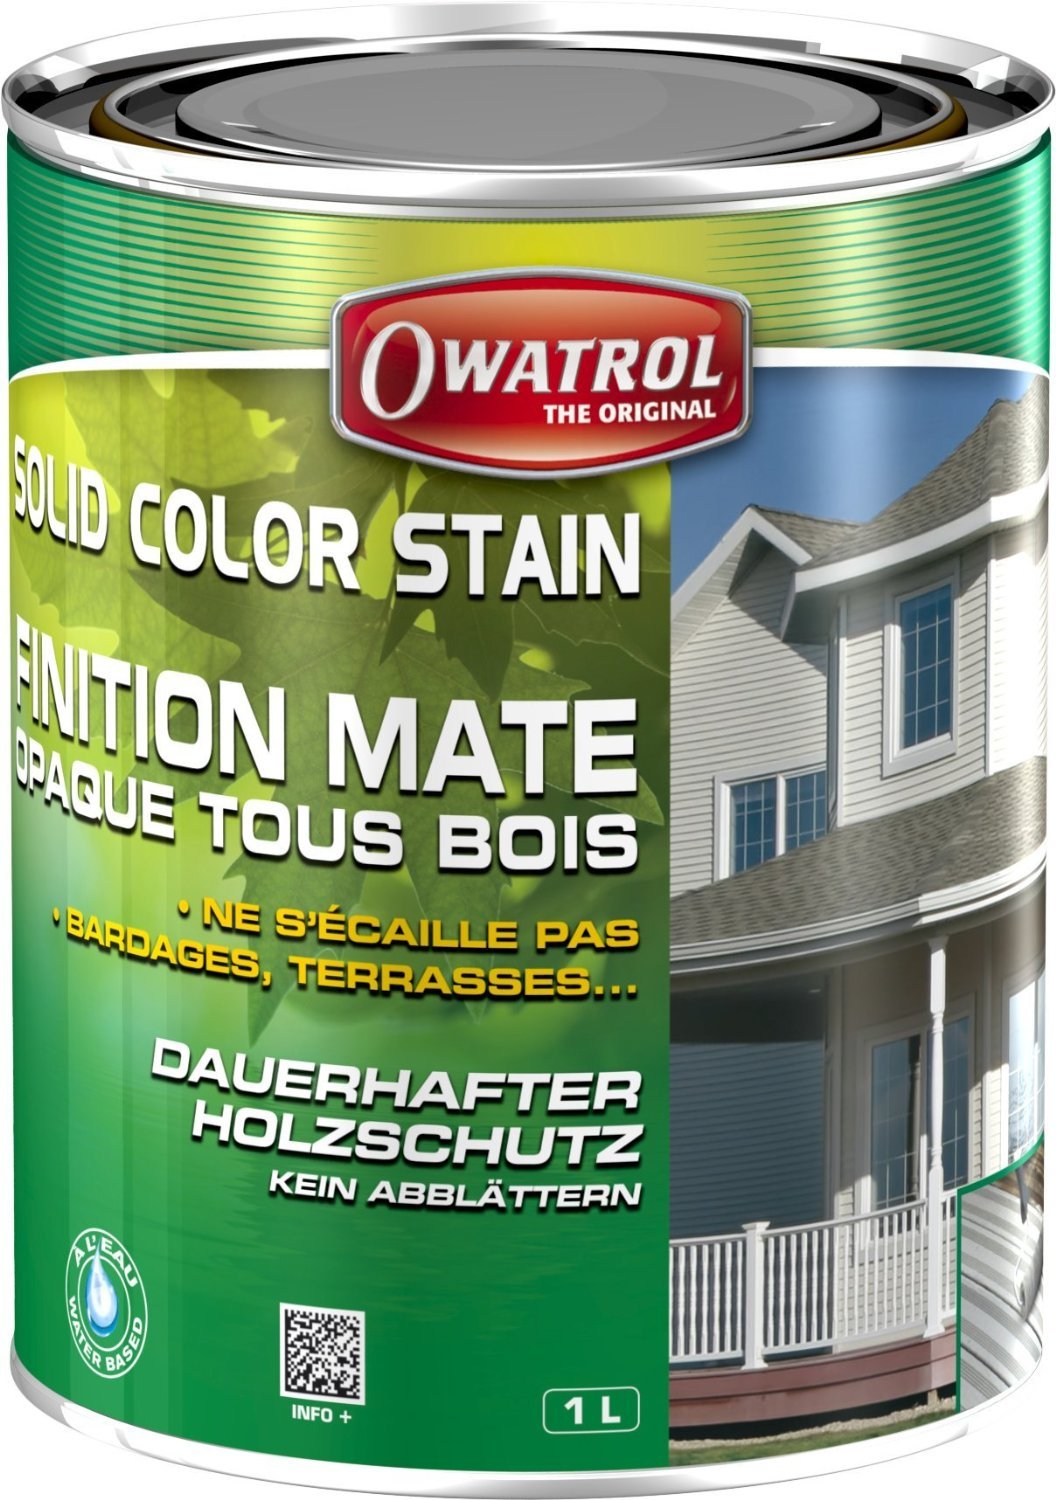 Owatrol - SOLID COLOR STAIN - Dauerhaft deckender Anstrich - Farbton moosgrün RAL 6005 - Gebindegrösse 2,5 Liter